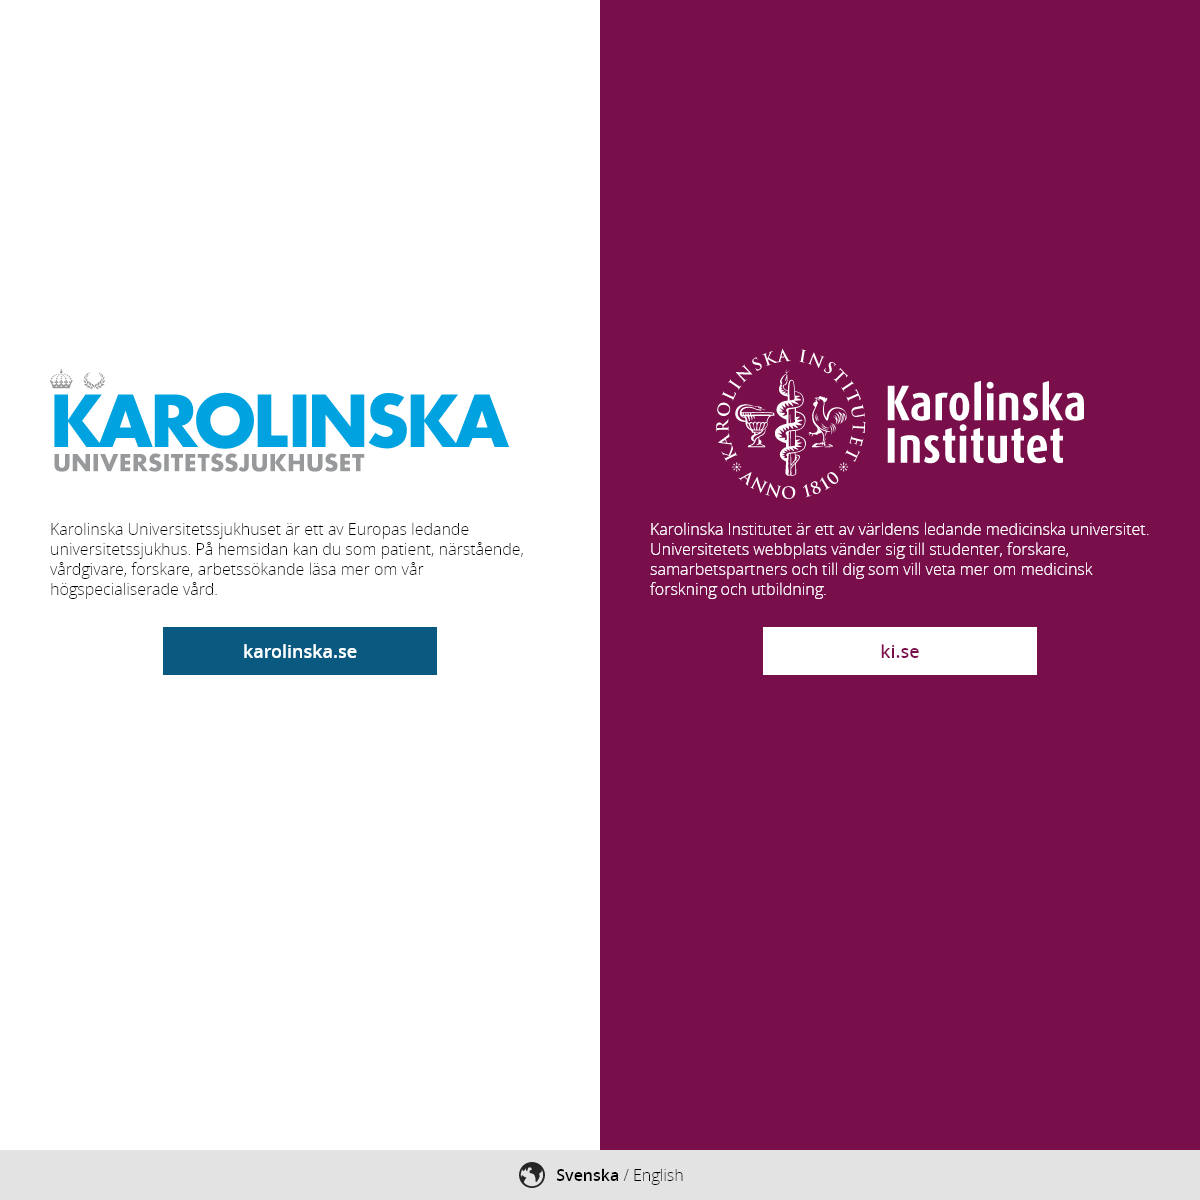 A complete backup of karolinska.se